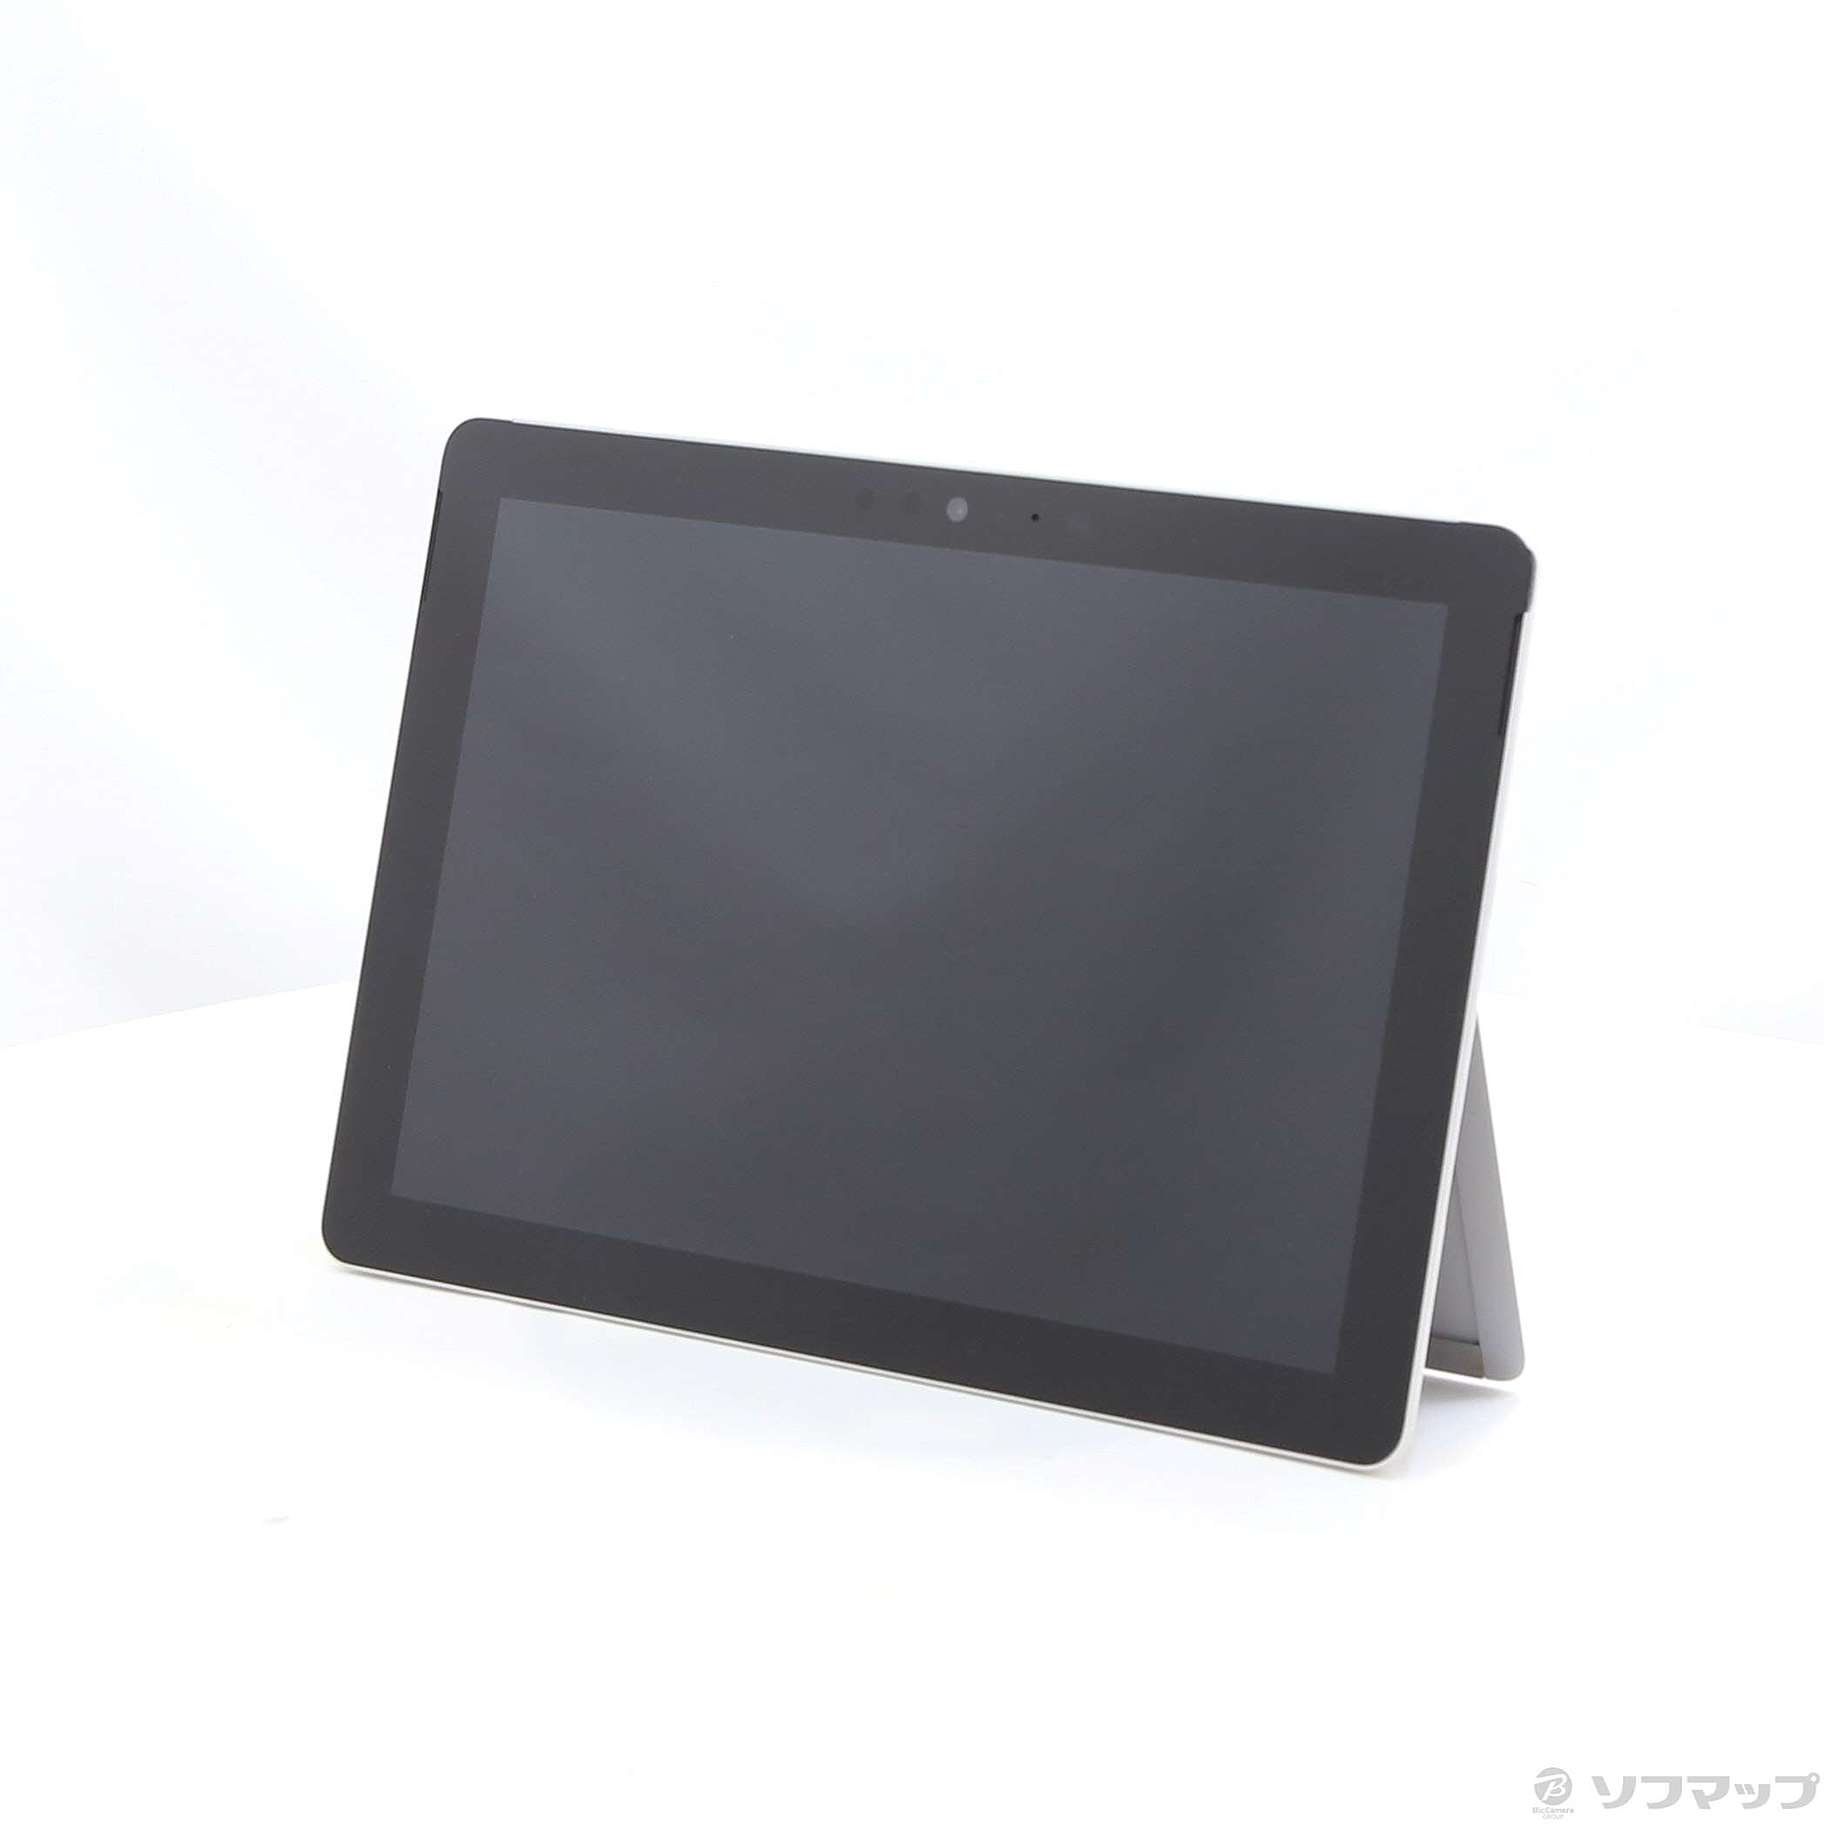 中古】Surface Go 〔Pentium 4415Y／4GB／eMMC64GB〕 MHN-00017